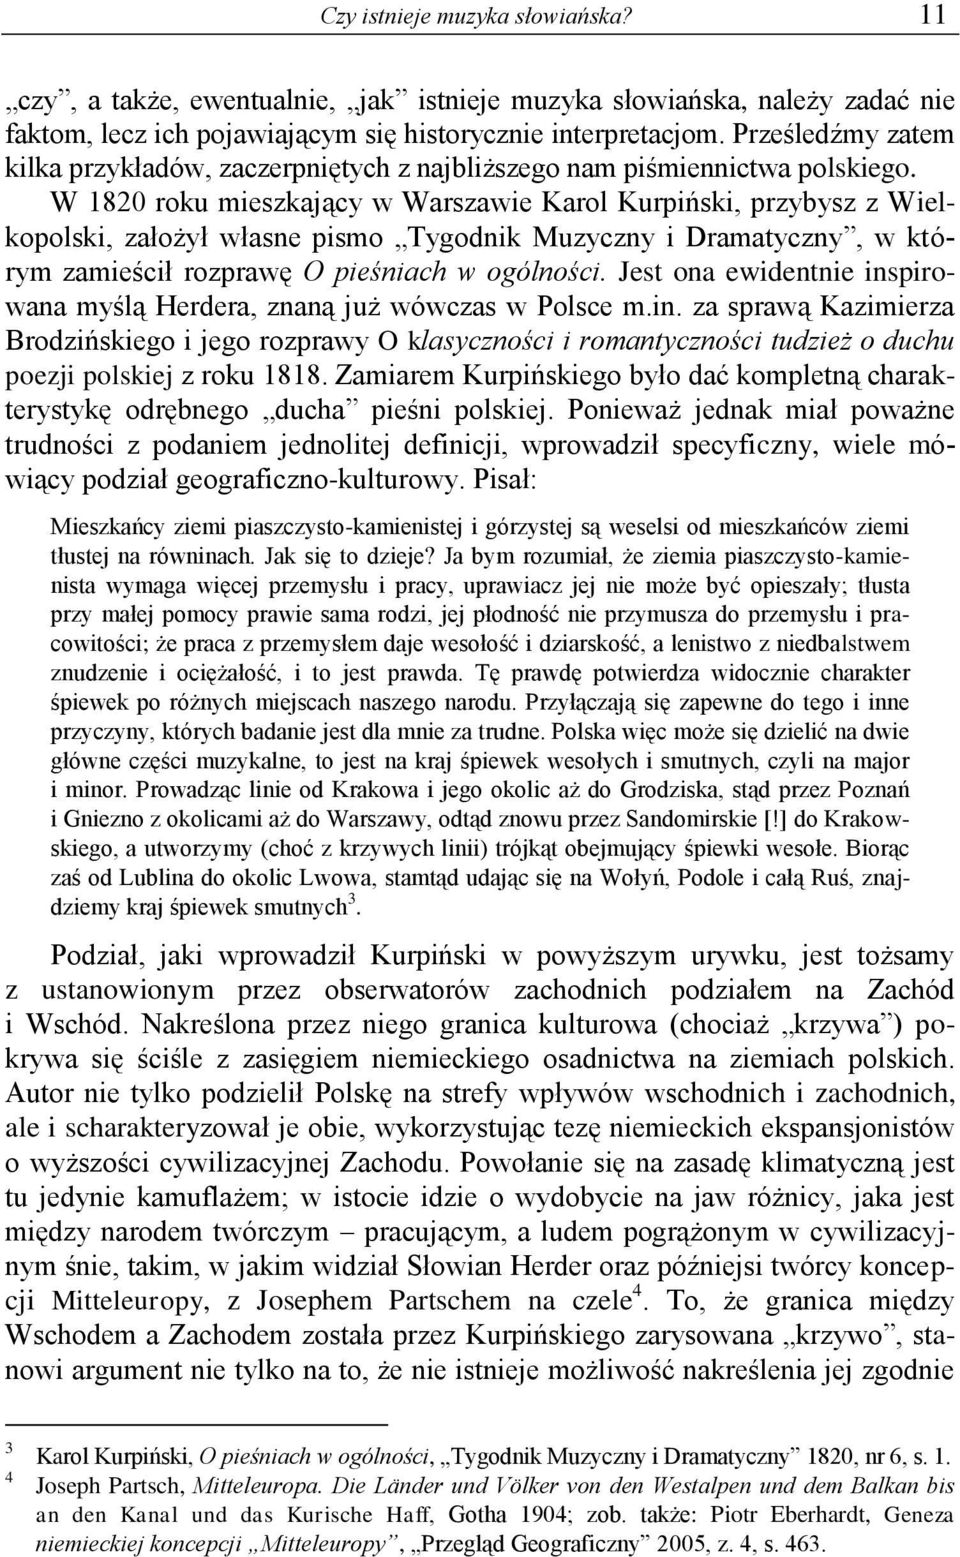 W 1820 roku mieszkający w Warszawie Karol Kurpiński, przybysz z Wielkopolski, założył własne pismo Tygodnik Muzyczny i Dramatyczny, w którym zamieścił rozprawę O pieśniach w ogólności.